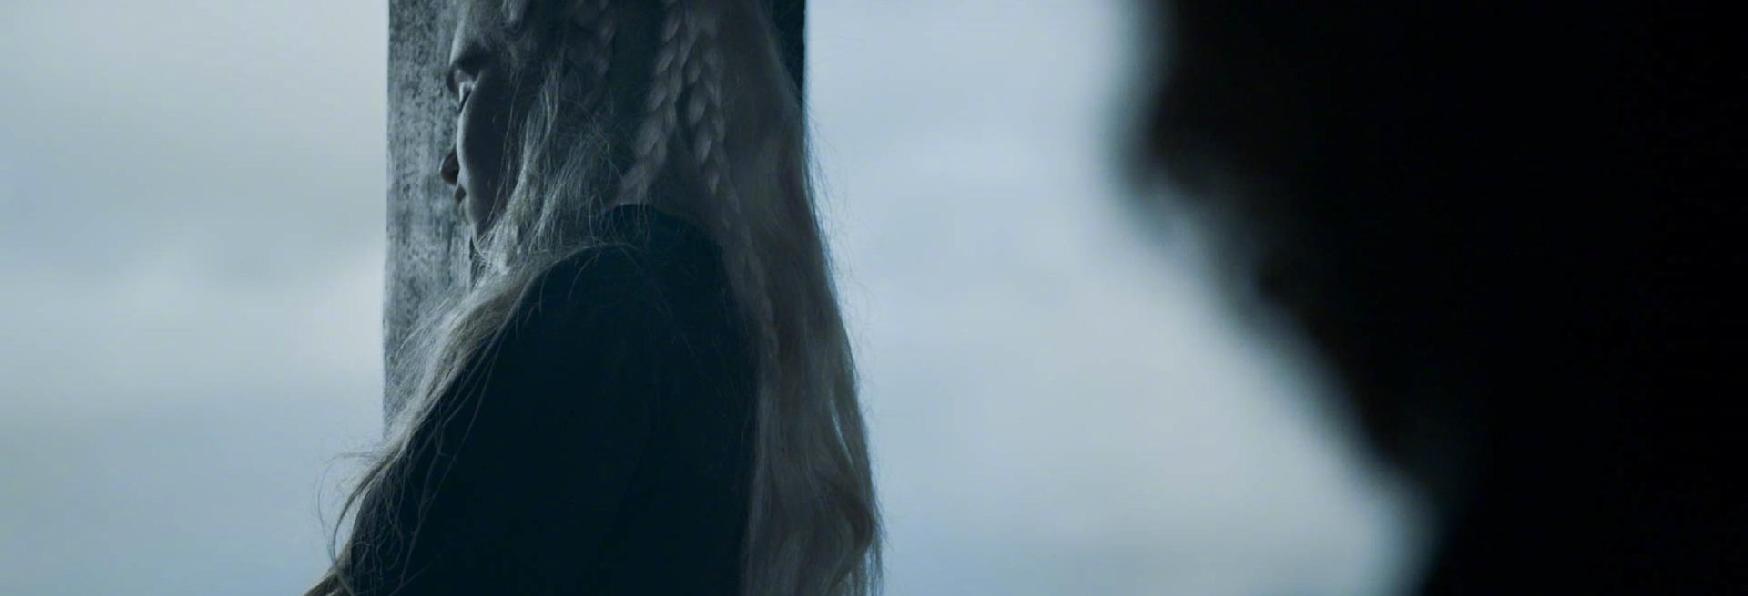 Game of Thrones 8x05: la Recensione del Penultimo Episodio della Serie TV HBO